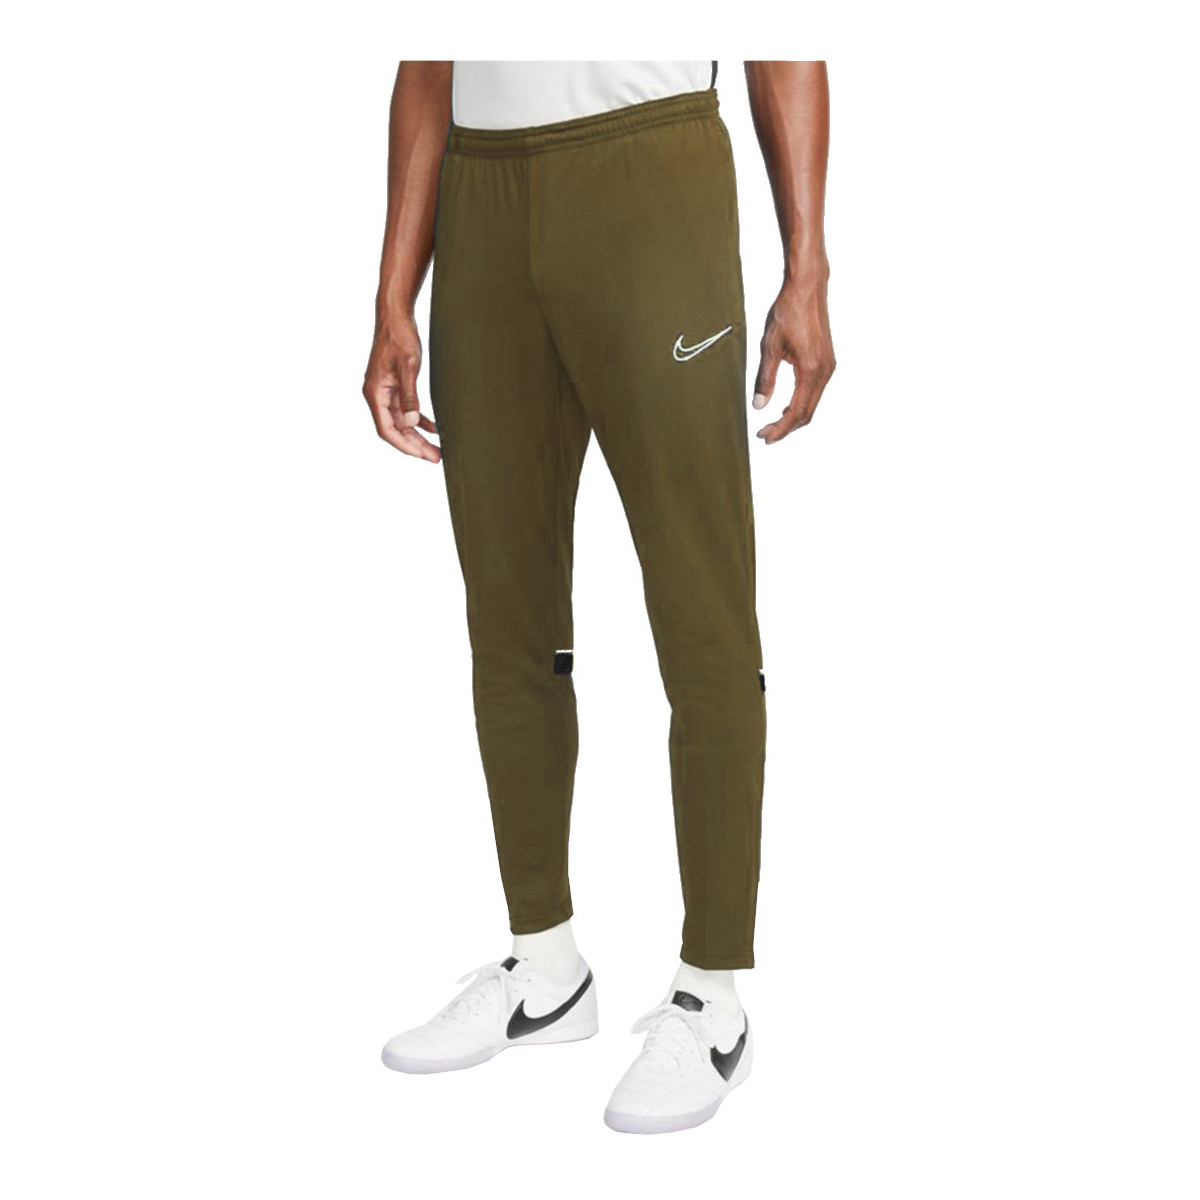 Υφασμάτινα Άνδρας Φόρμες Nike Dri-FIT Academy Pants Green